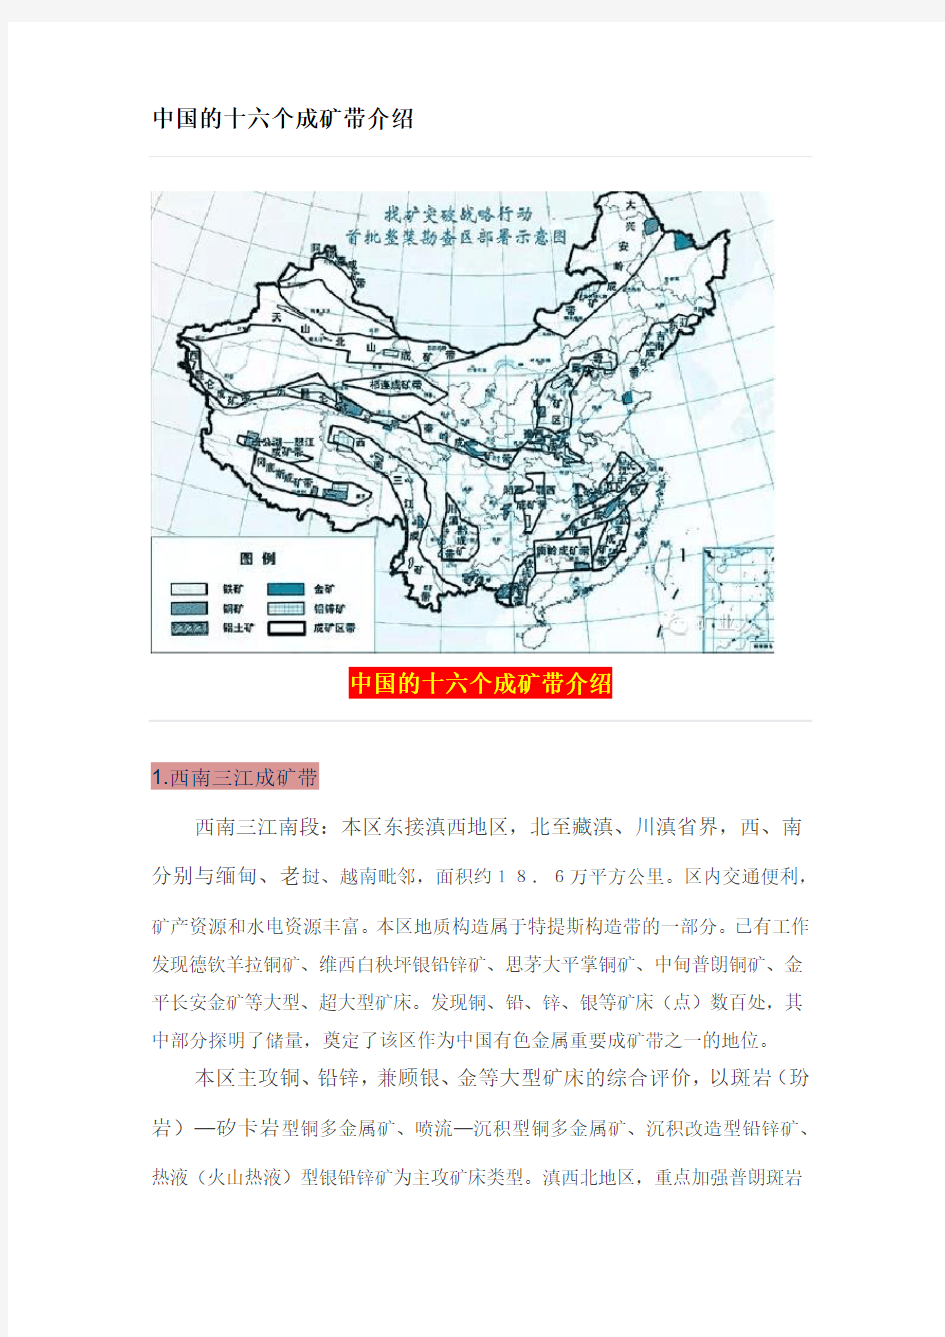 中国的十六个成矿带介绍